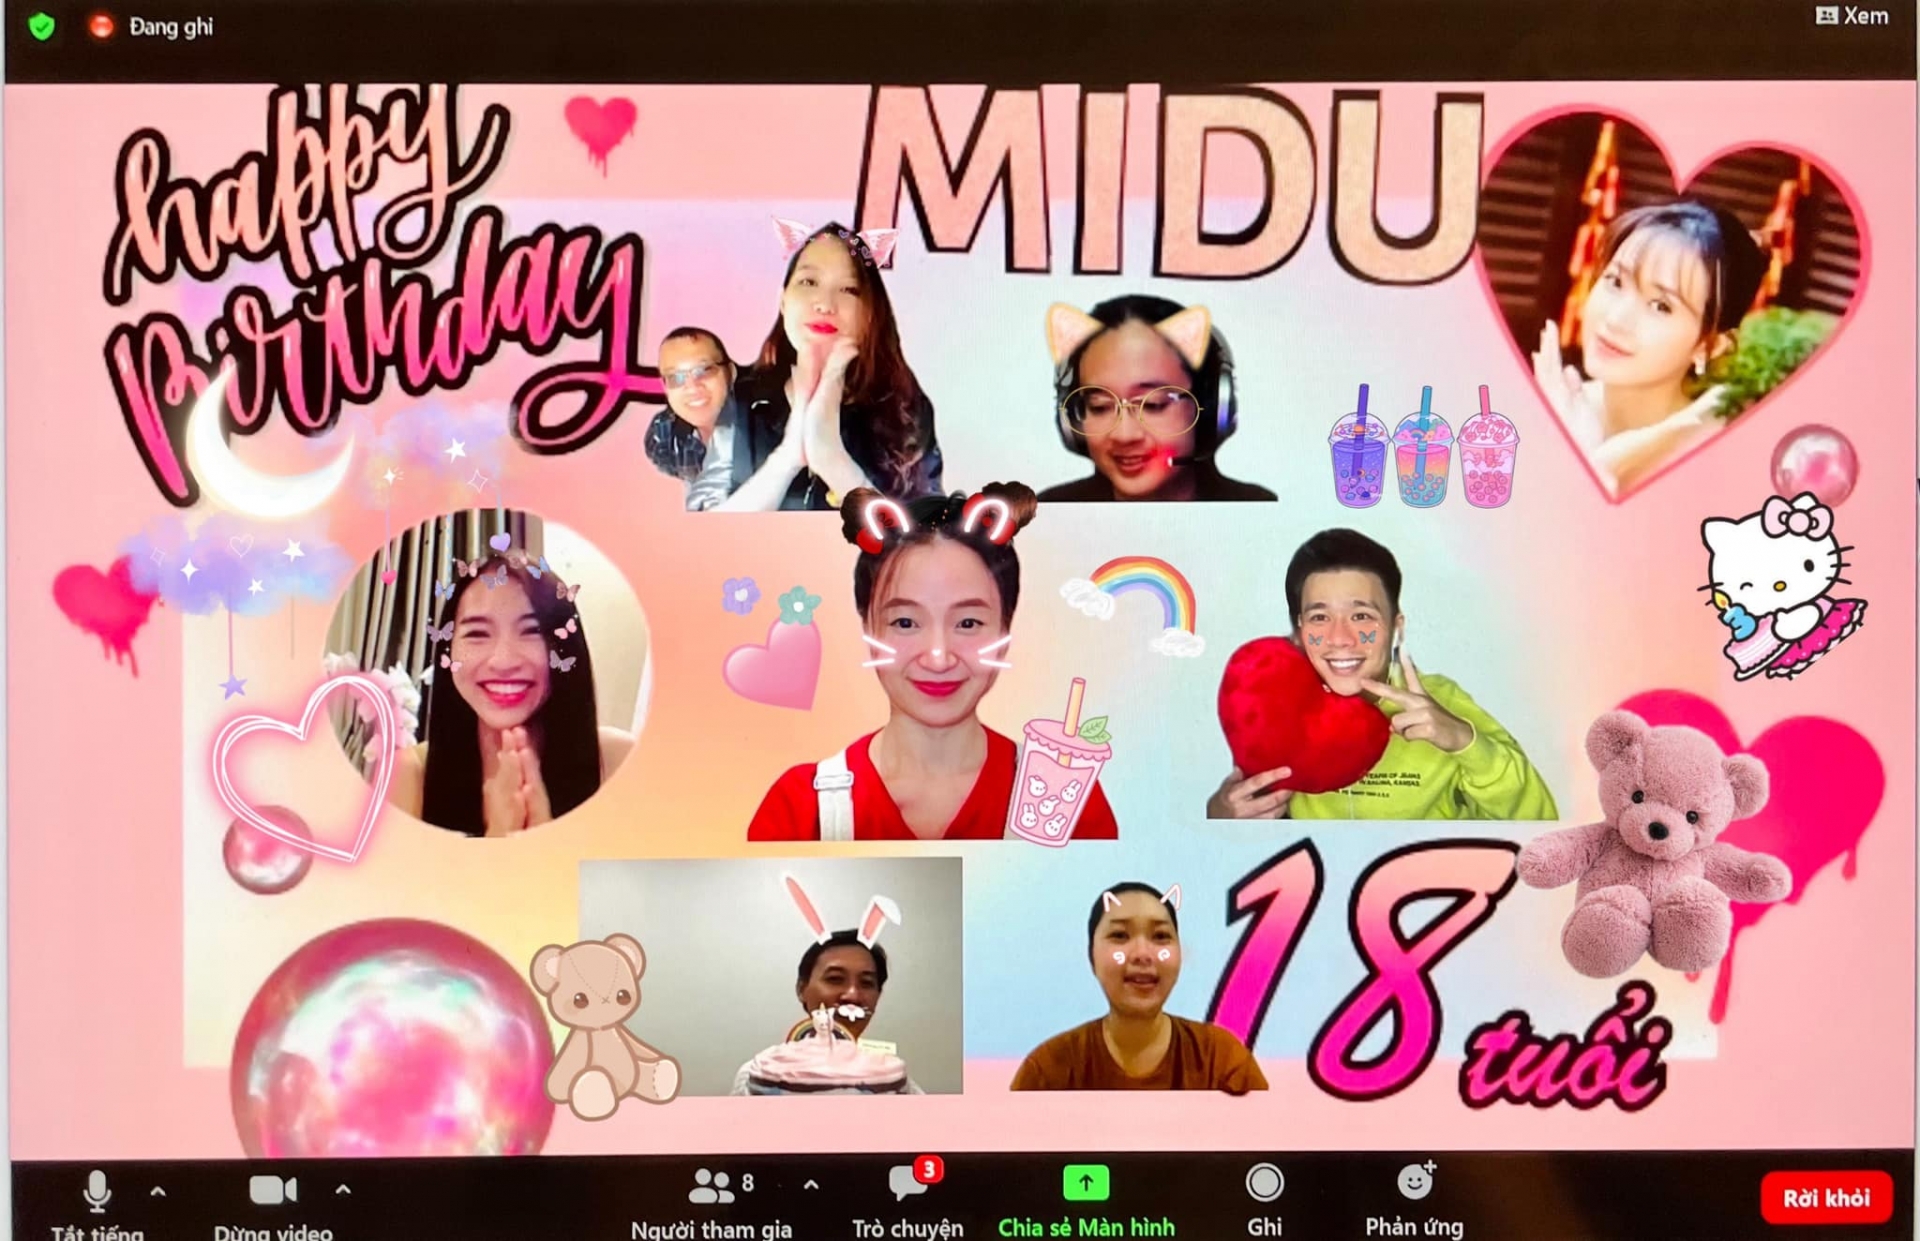 Buổi tiệc mừng sinh nhật online của Midu vào ngày 10/5